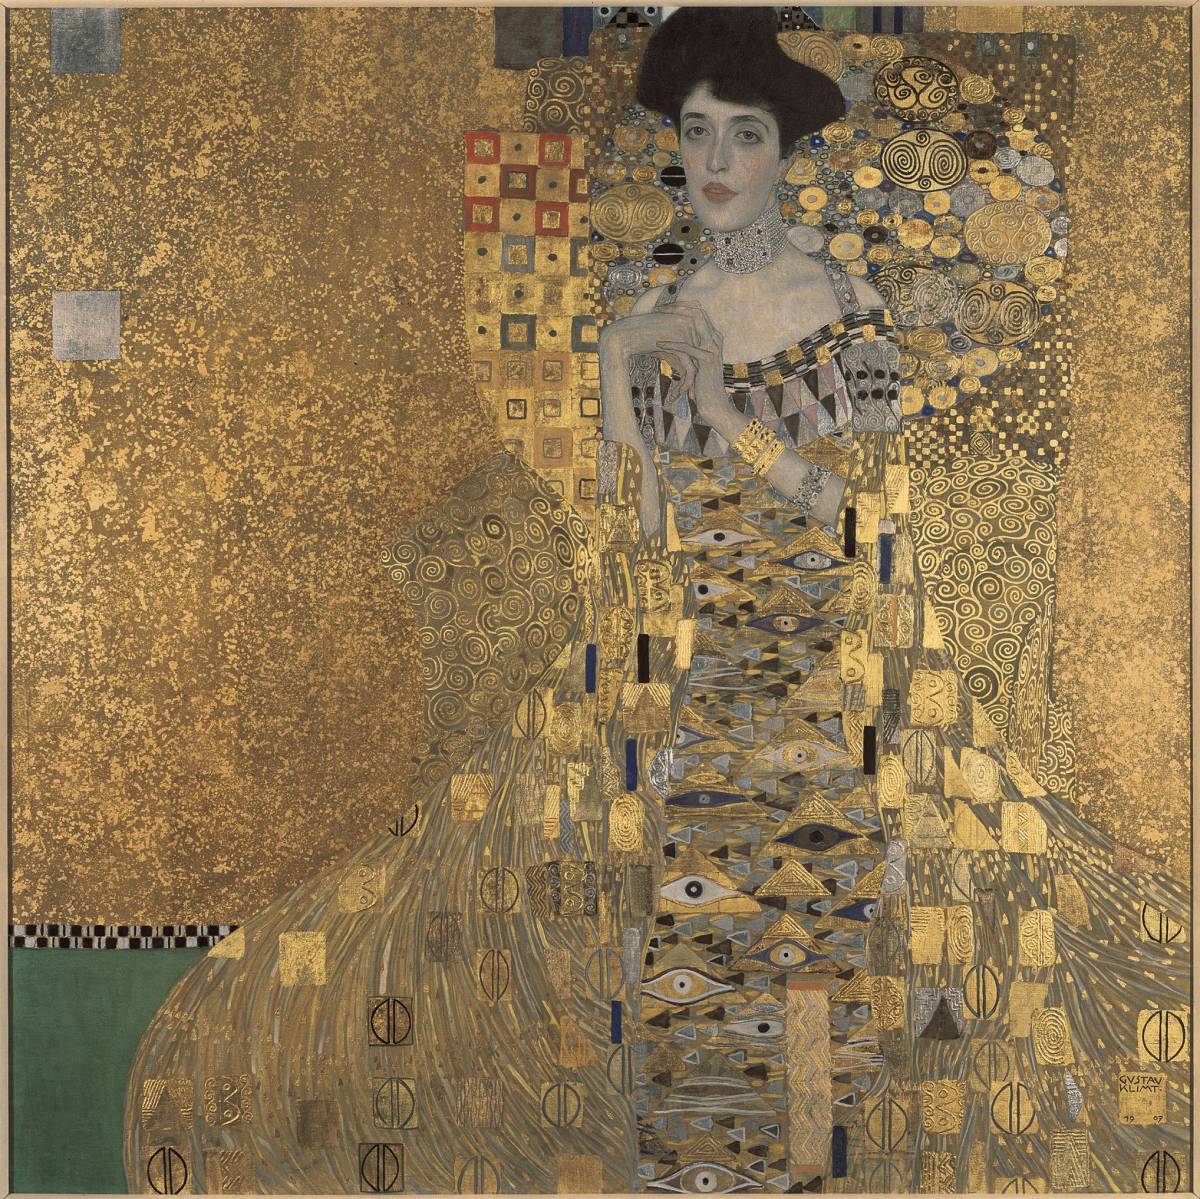 Nuevo, sin marco, Impresión de alta calidad con técnica especial del retrato de Adele Bloch-Bauer de Klimt, tamaño A4, precio especial: 980 yenes (envío incluido), comprar ahora, obra de arte, cuadro, otros